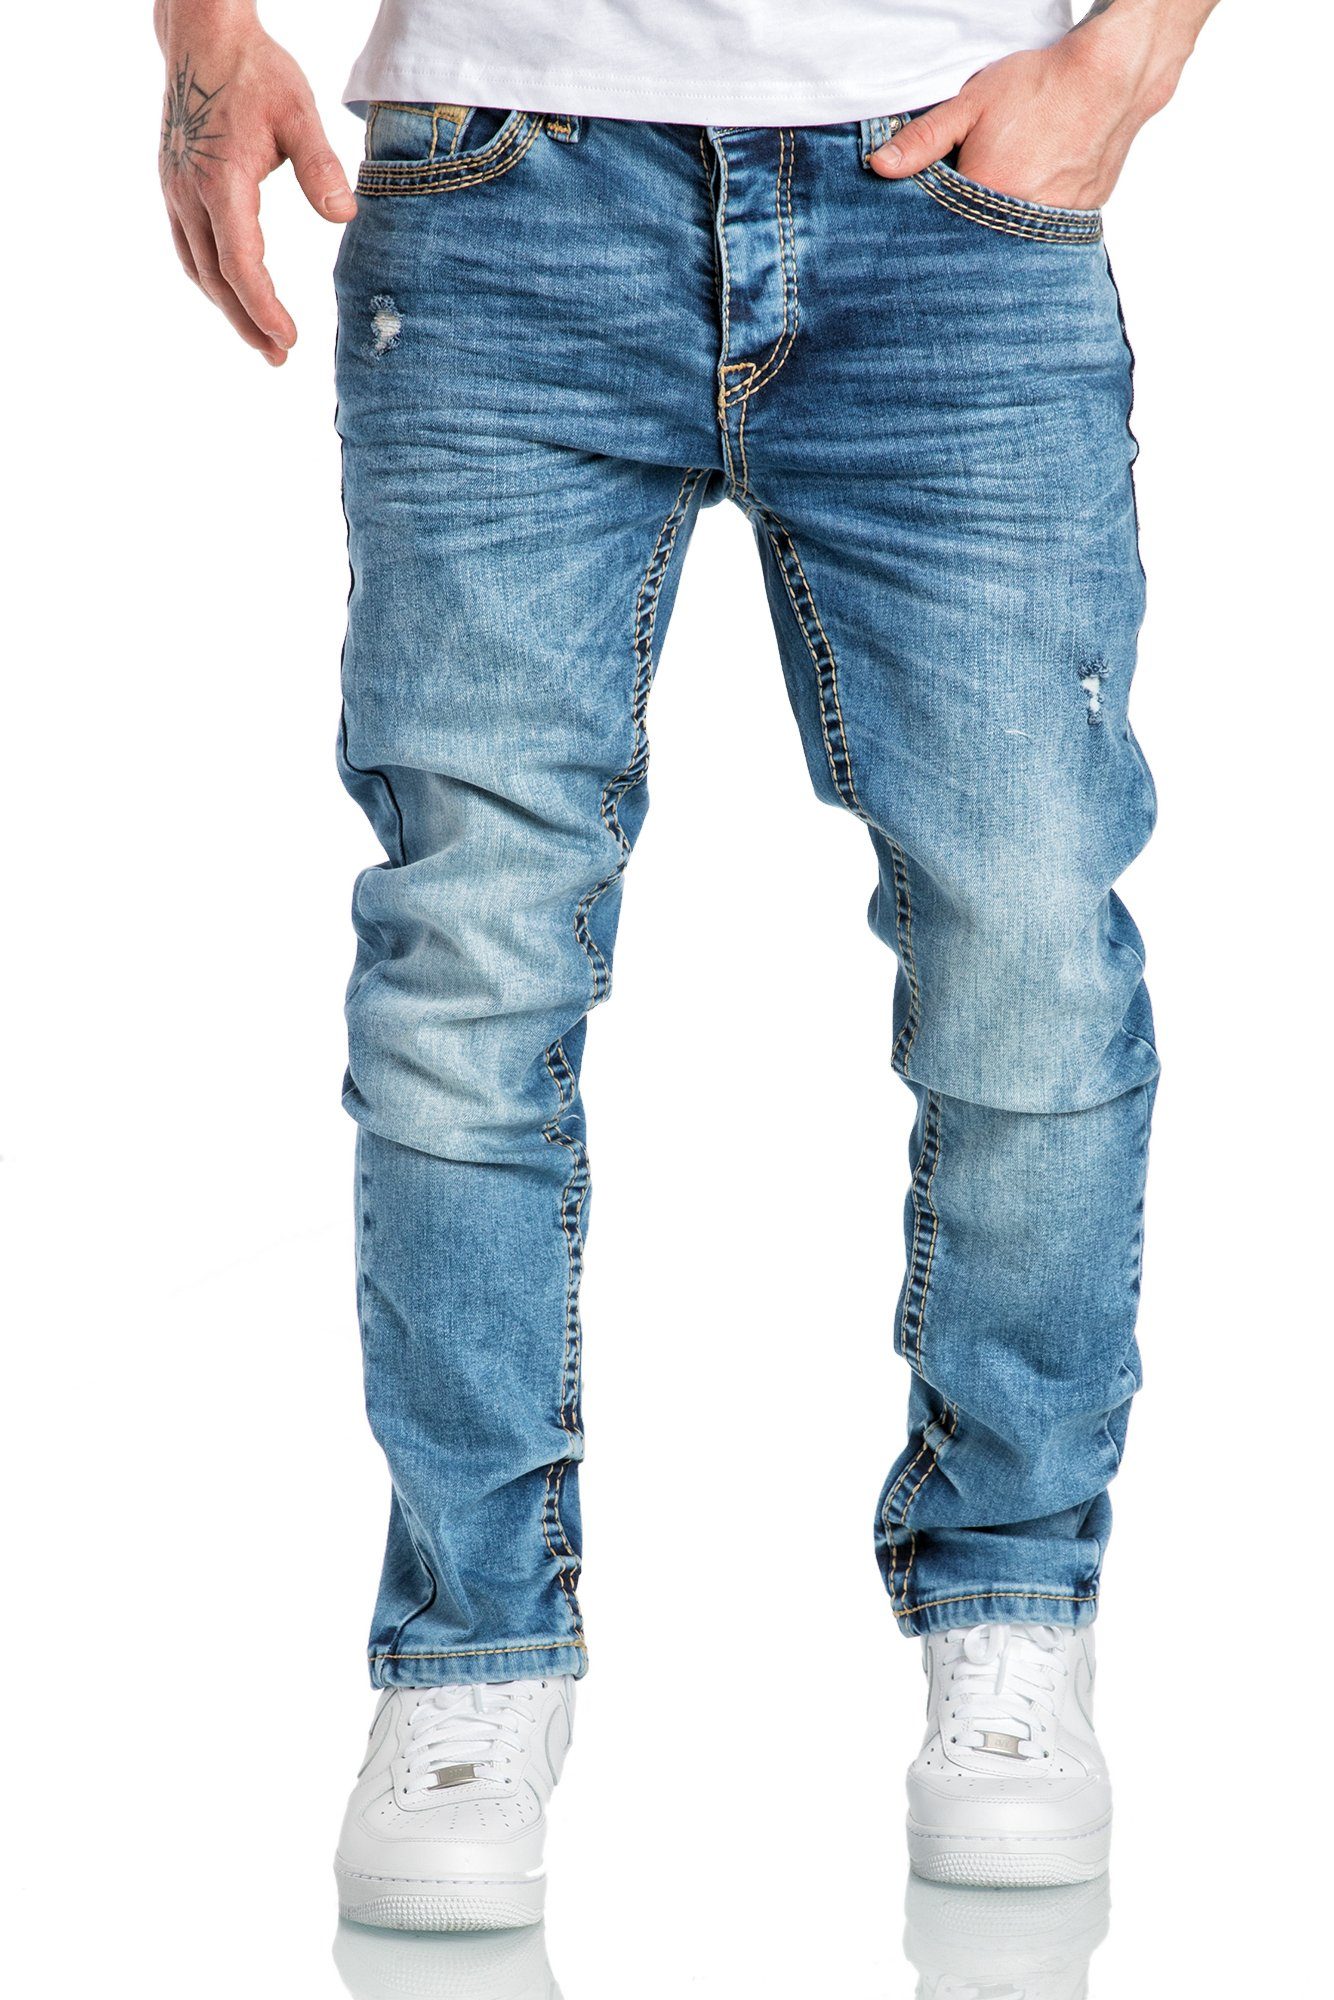 Amaci&Sons Stretch-Jeans ANCHORAGE Jeans Destroyed Regular Slim Herren Dicke Nähte Destroyed Regular Slim Denim Hose Fit Hellblau